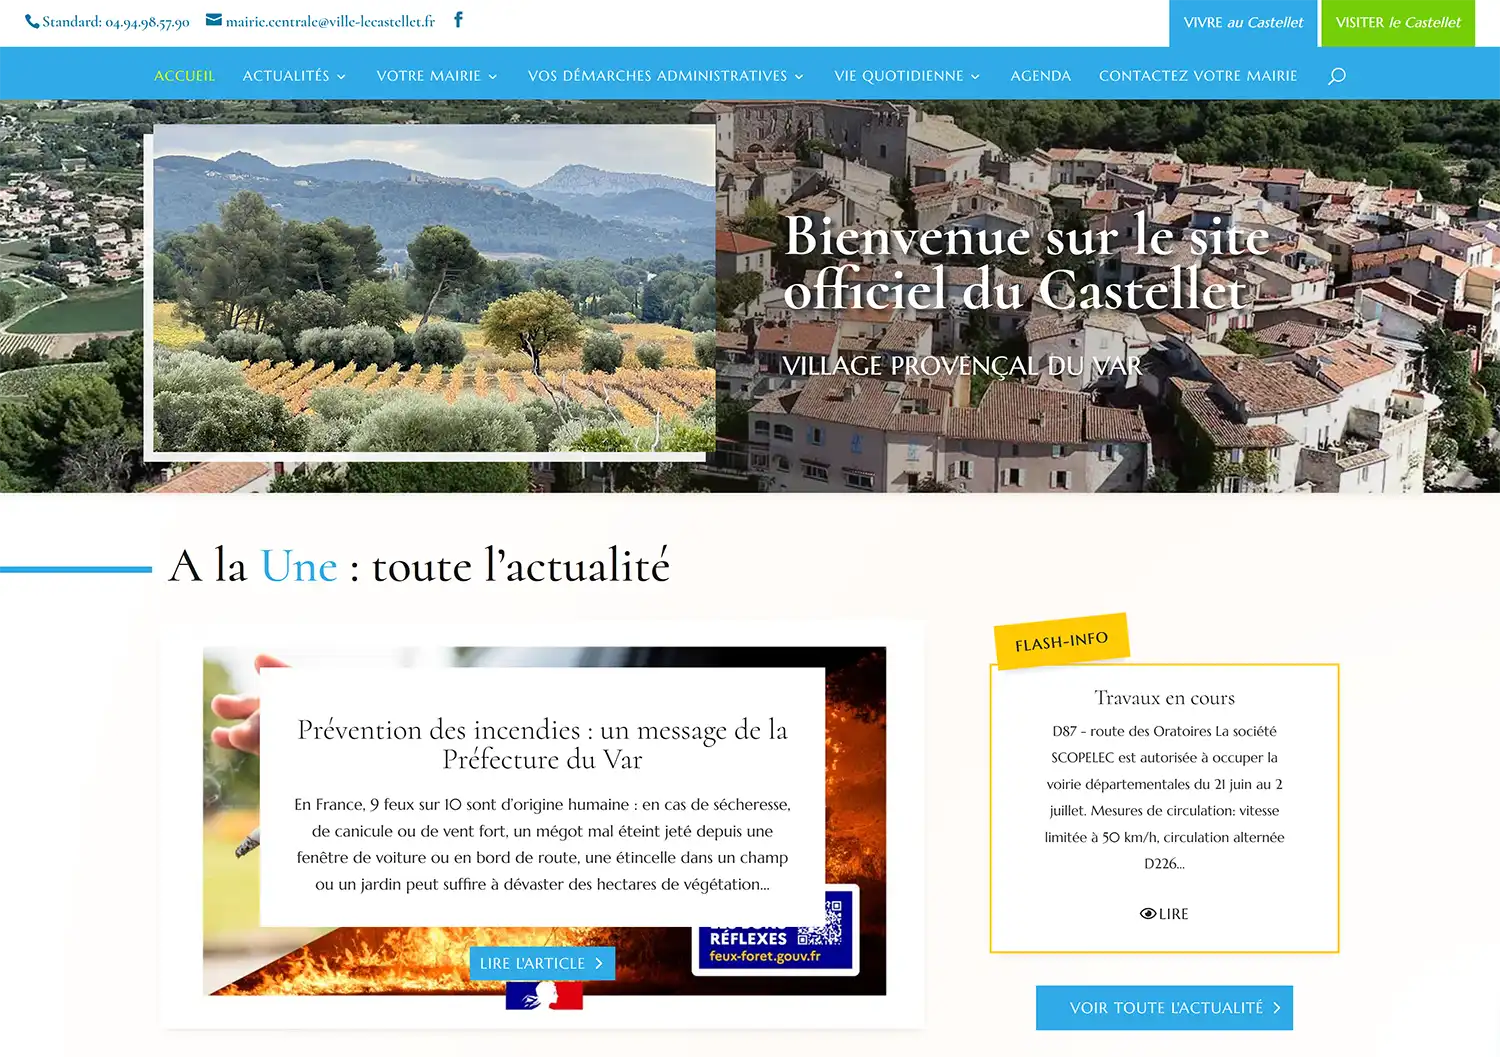 Accueil - Site officiel du Castellet